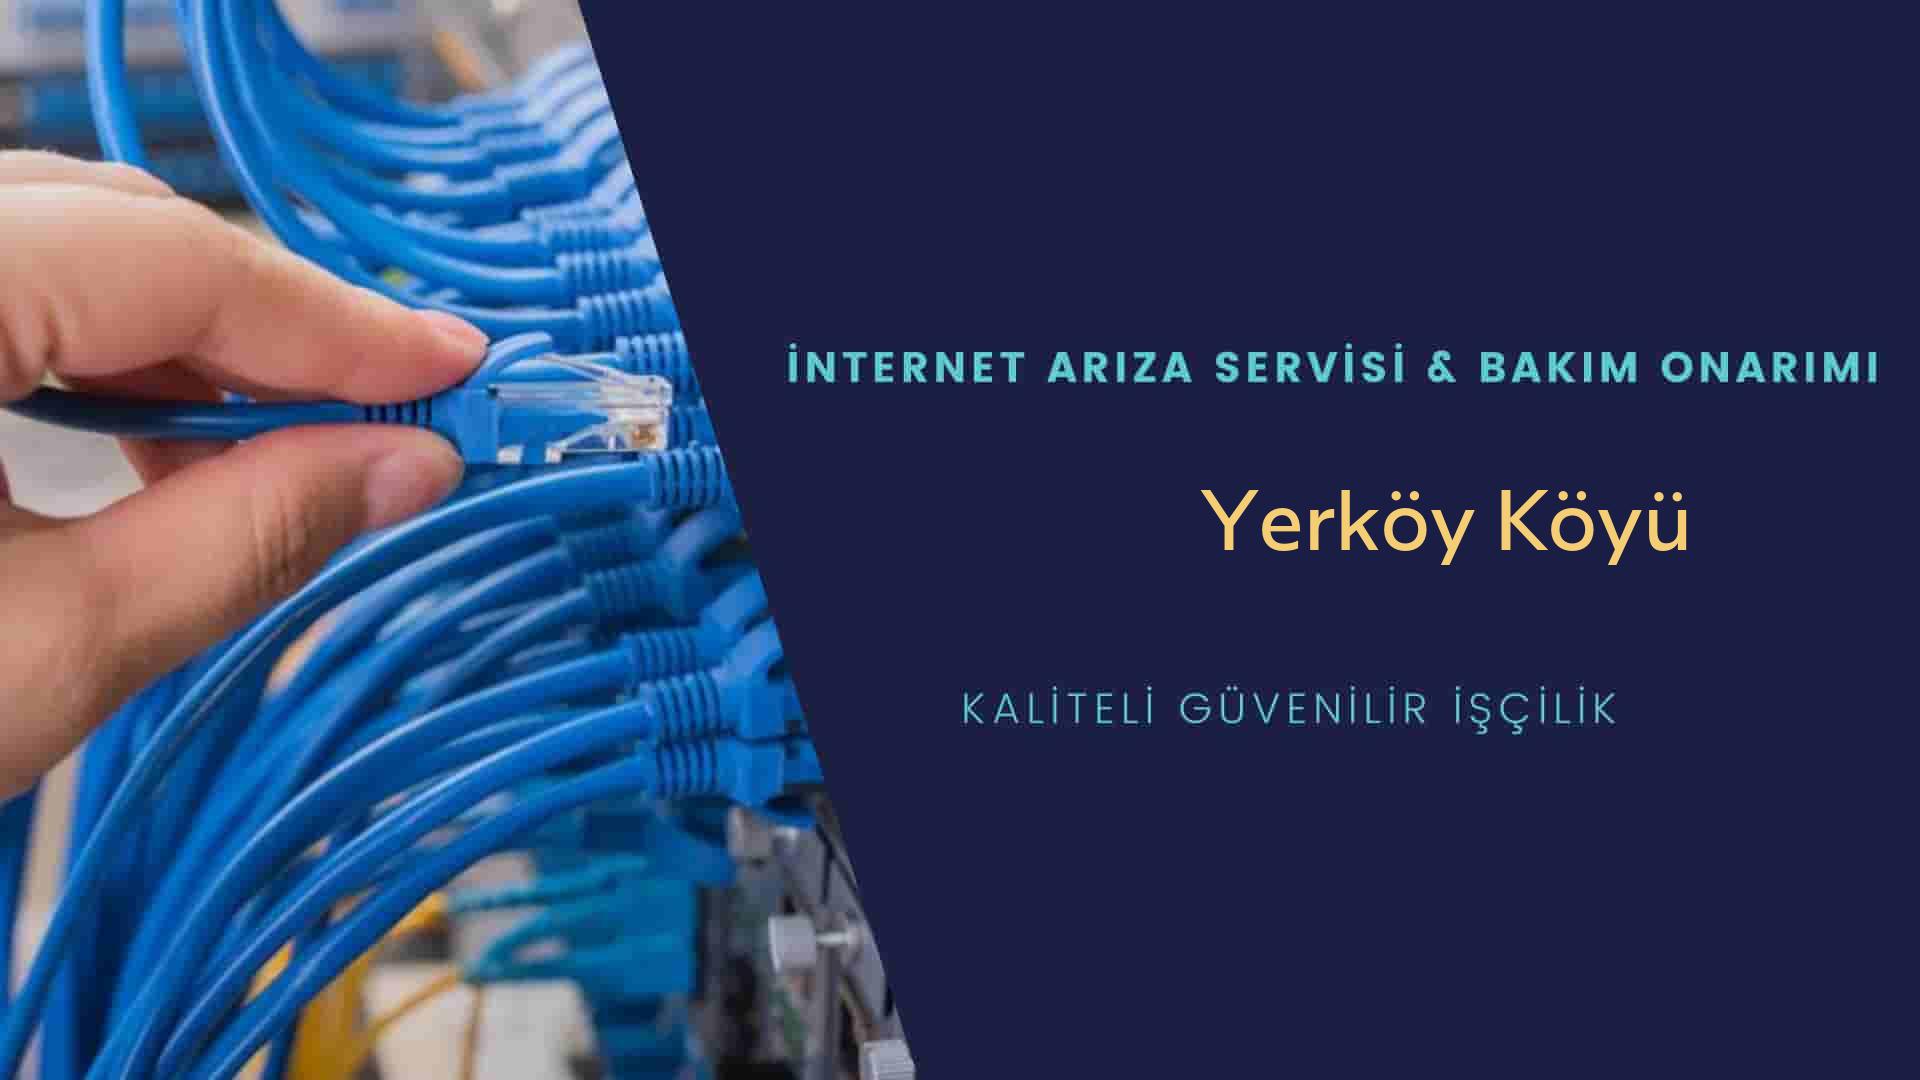 Yerköy Köyü internet kablosu çekimi yapan yerler veya elektrikçiler mi? arıyorsunuz doğru yerdesiniz o zaman sizlere 7/24 yardımcı olacak profesyonel ustalarımız bir telefon kadar yakındır size.